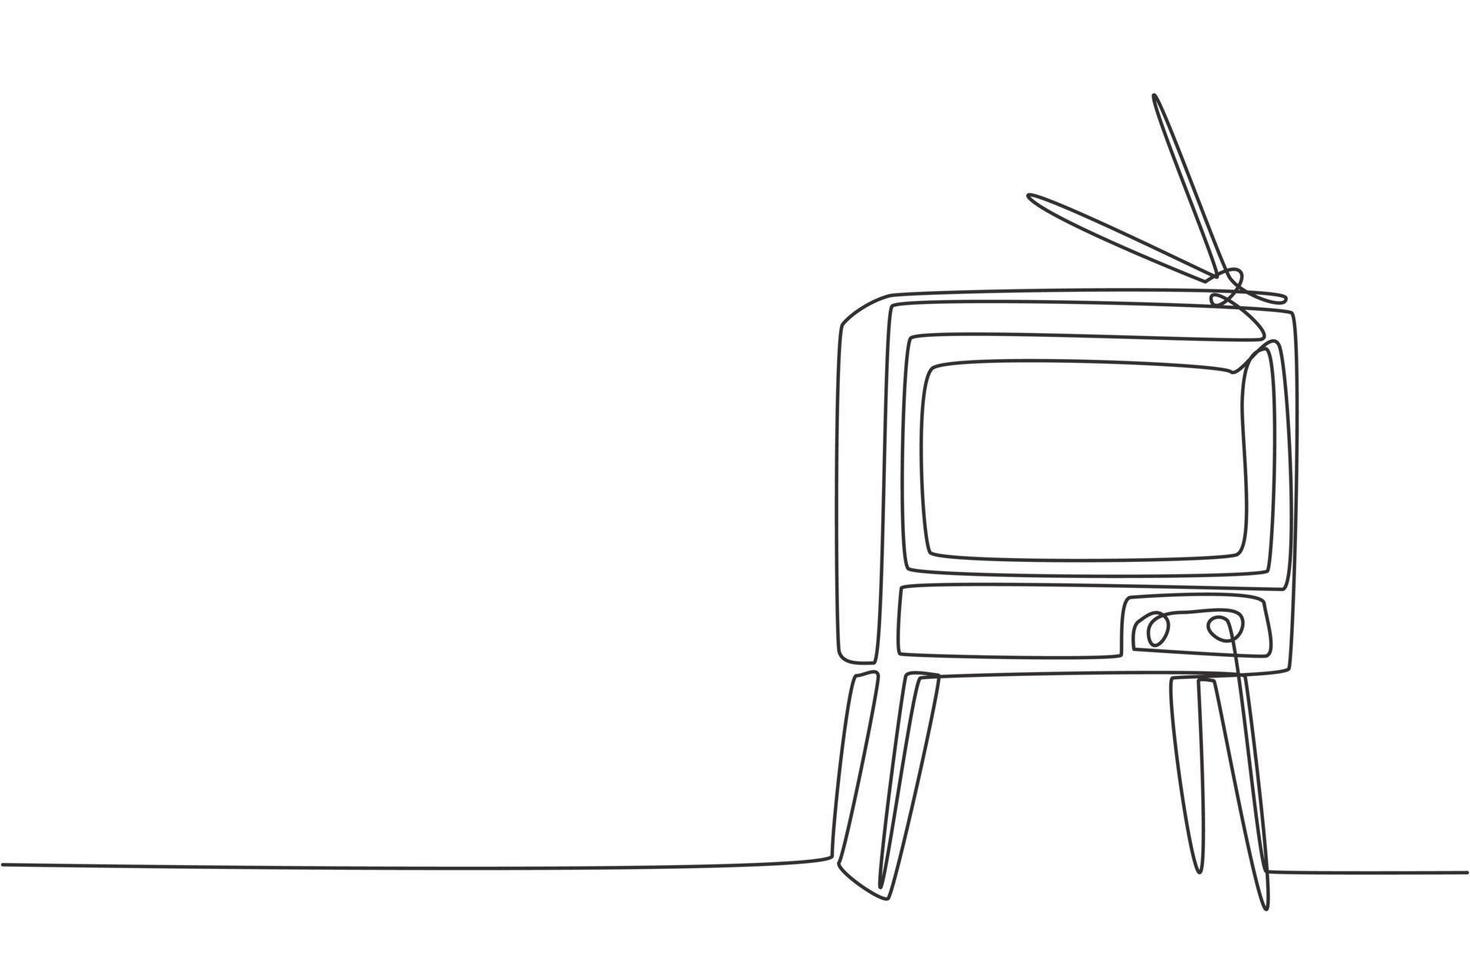 Un dibujo de línea continua de un televisor antiguo retro con mesa y patas de madera. Ilustración de vector gráfico de diseño de dibujo de línea única de concepto de televisión analógica vintage clásico